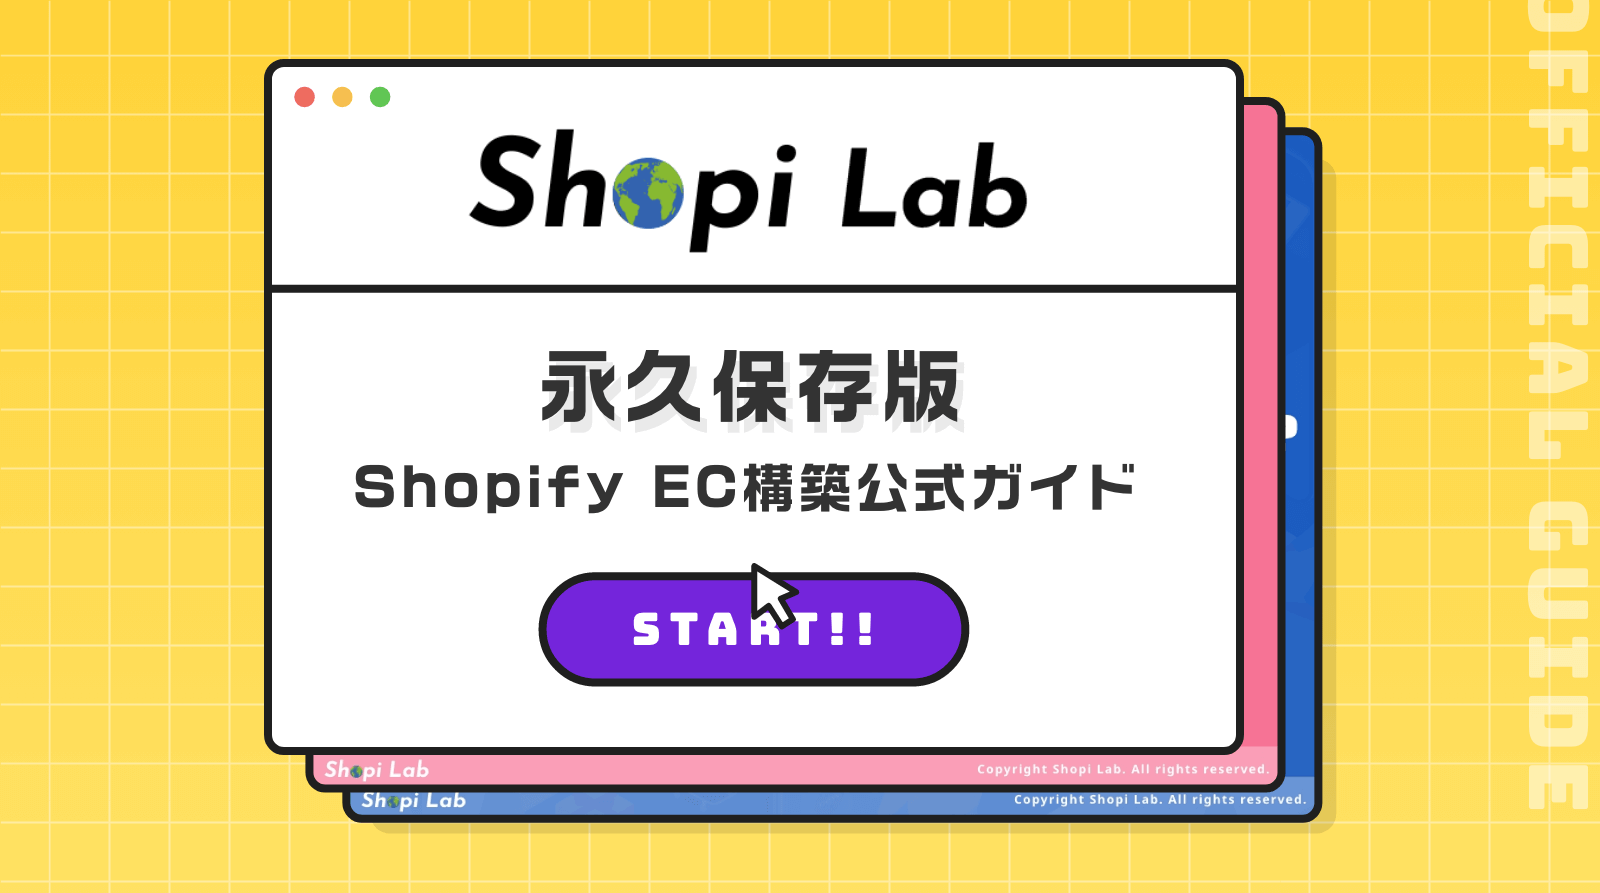 永久保存版 Shopify EC構築公式ガイド